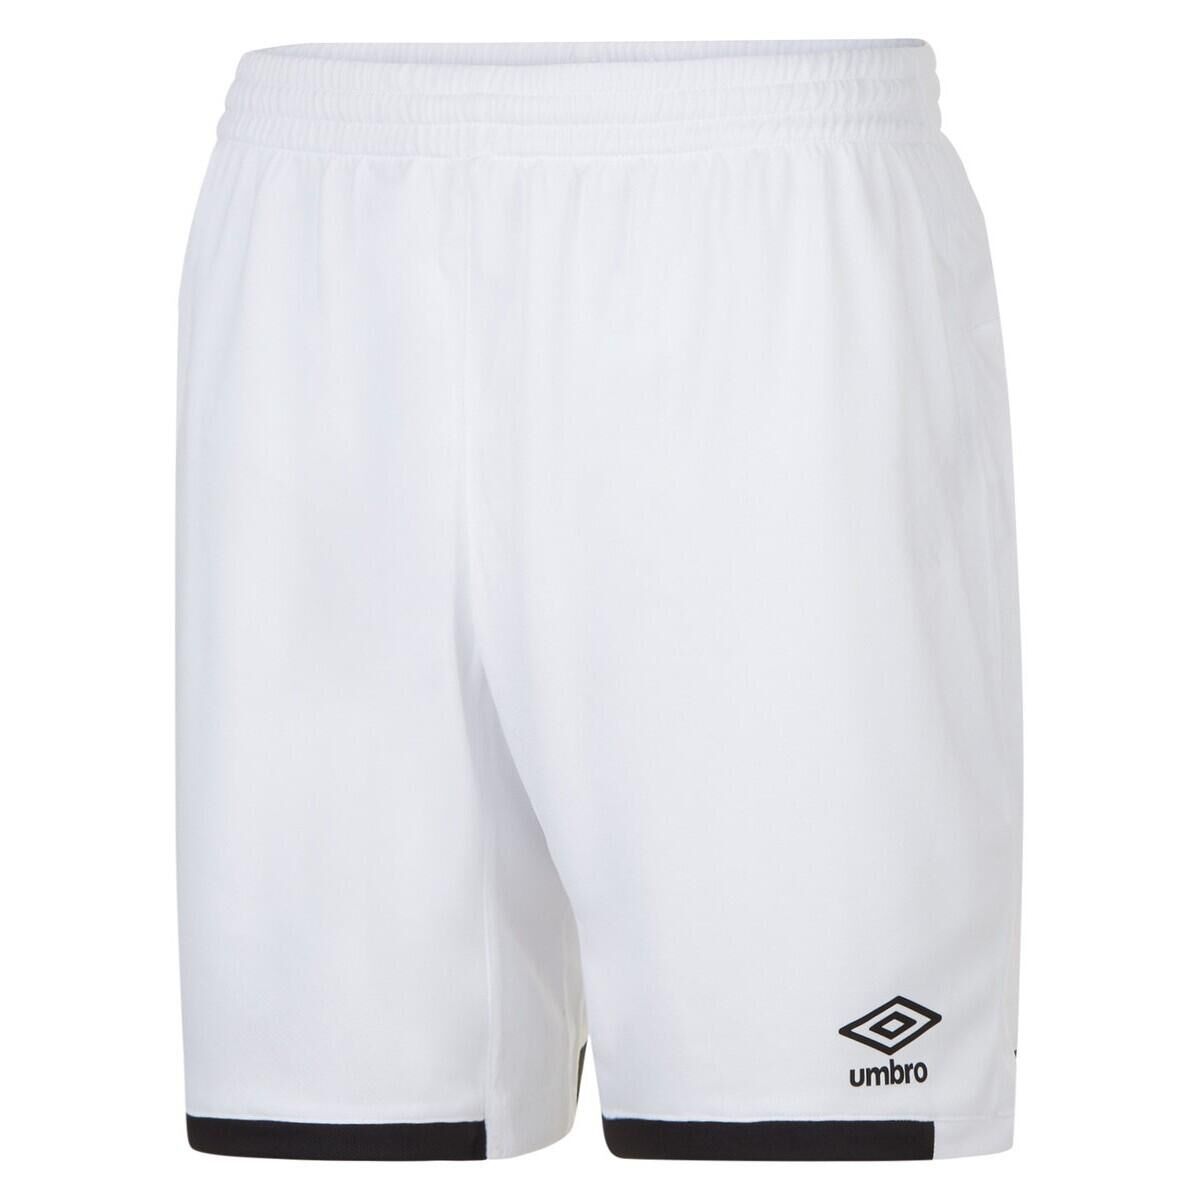 UMBRO Unisex Adult Stacked Logo Shorts (White/Black)